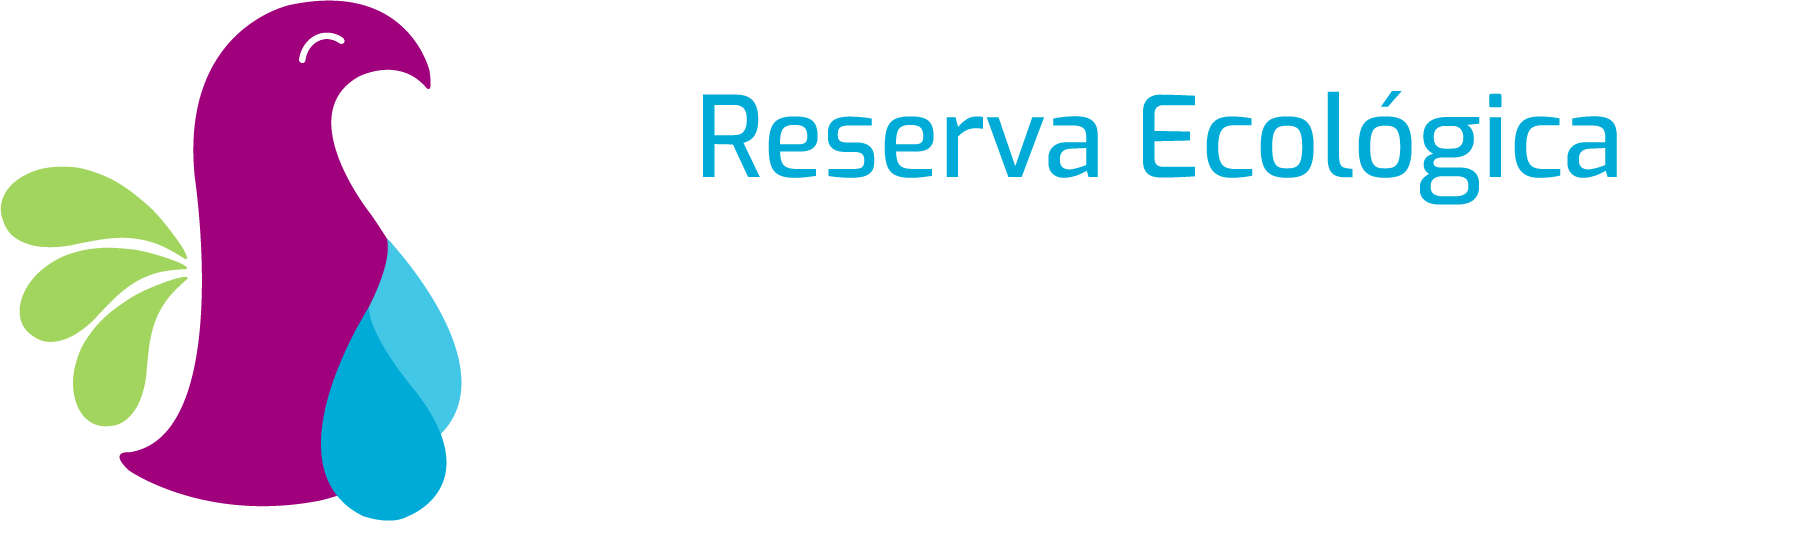 logo cuxtal